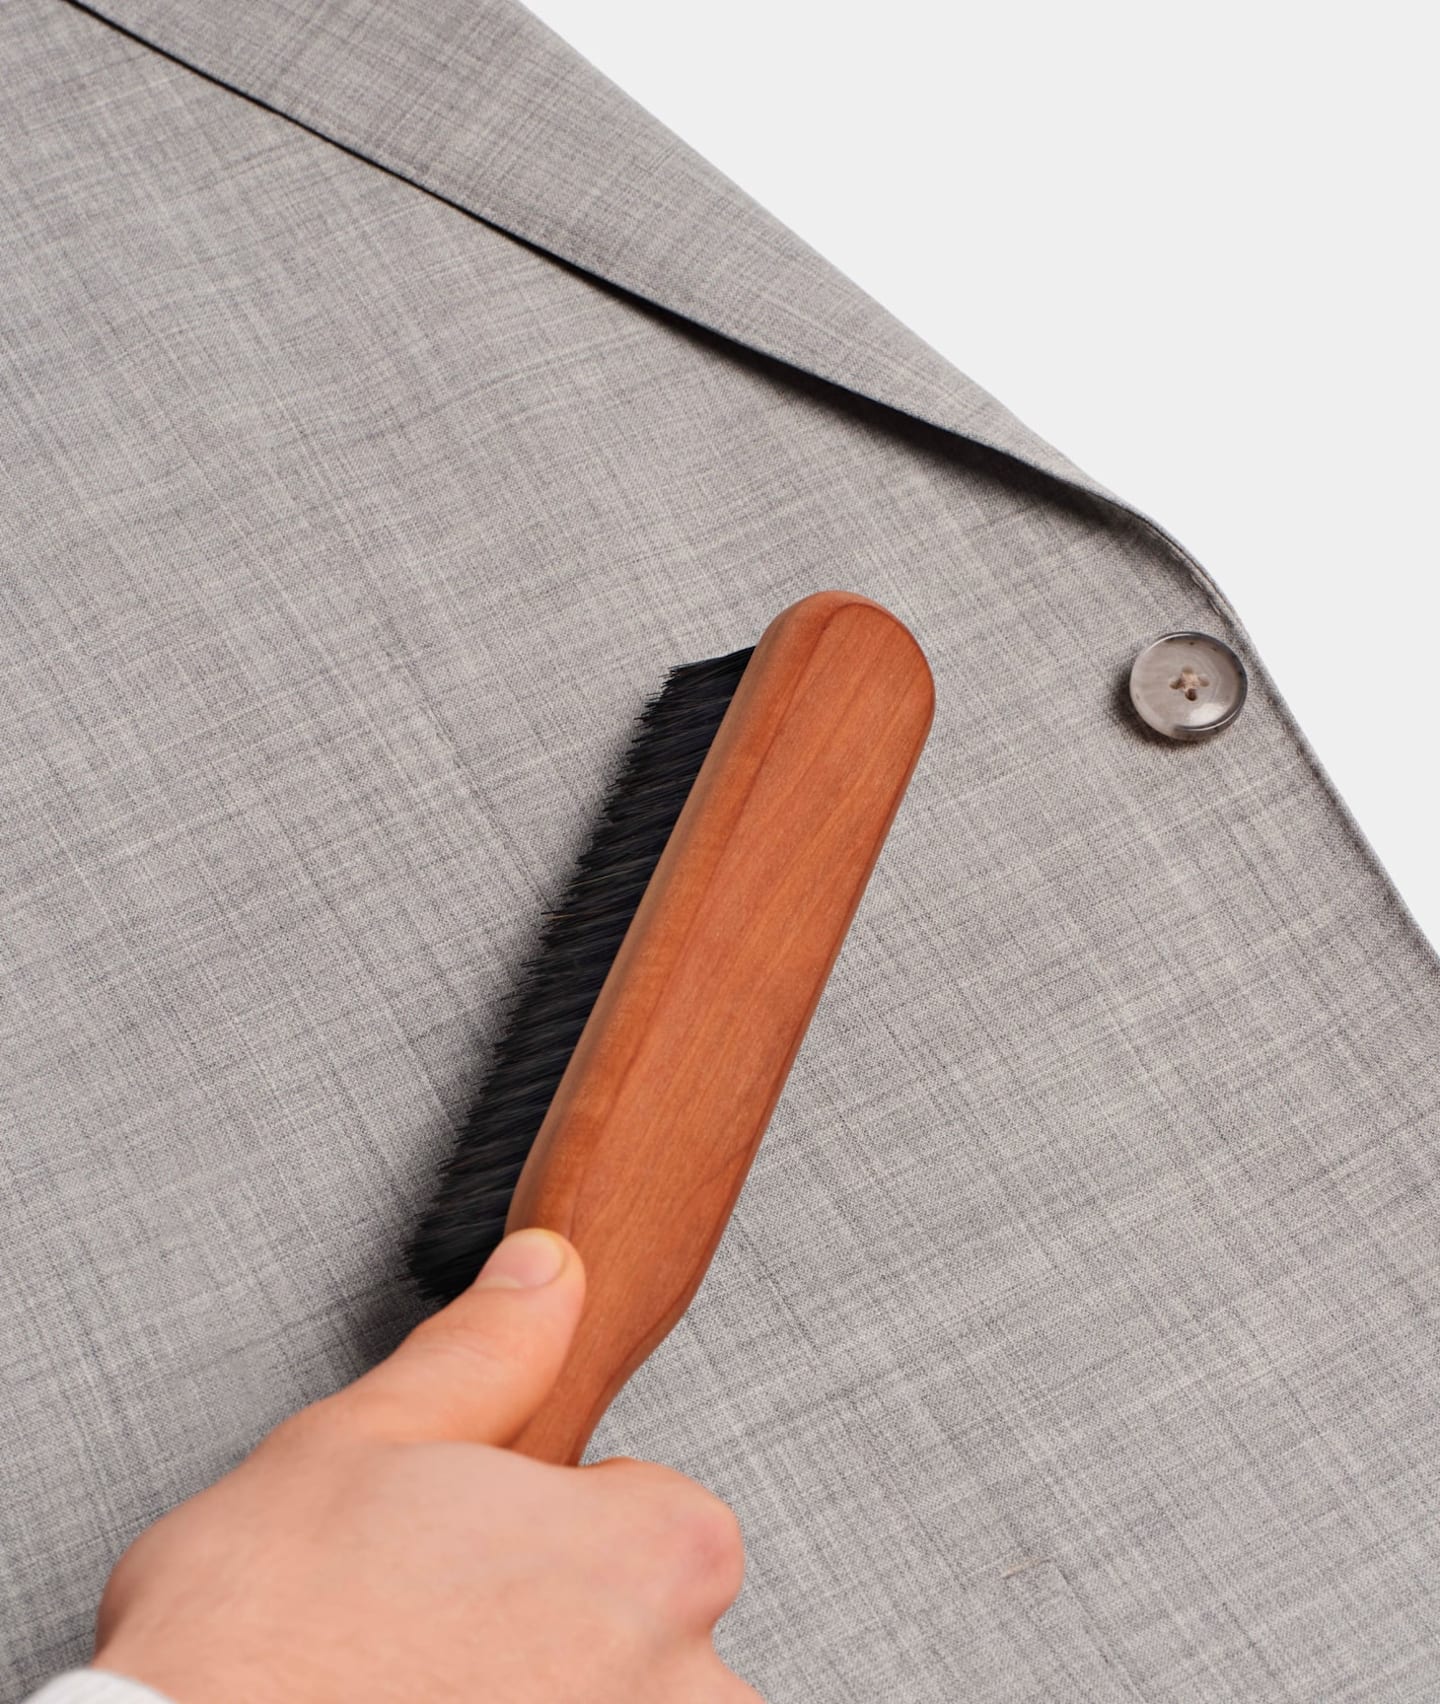 Cepillado de un blazer gris con cepillo de madera hecho con cerdas de jabalí.